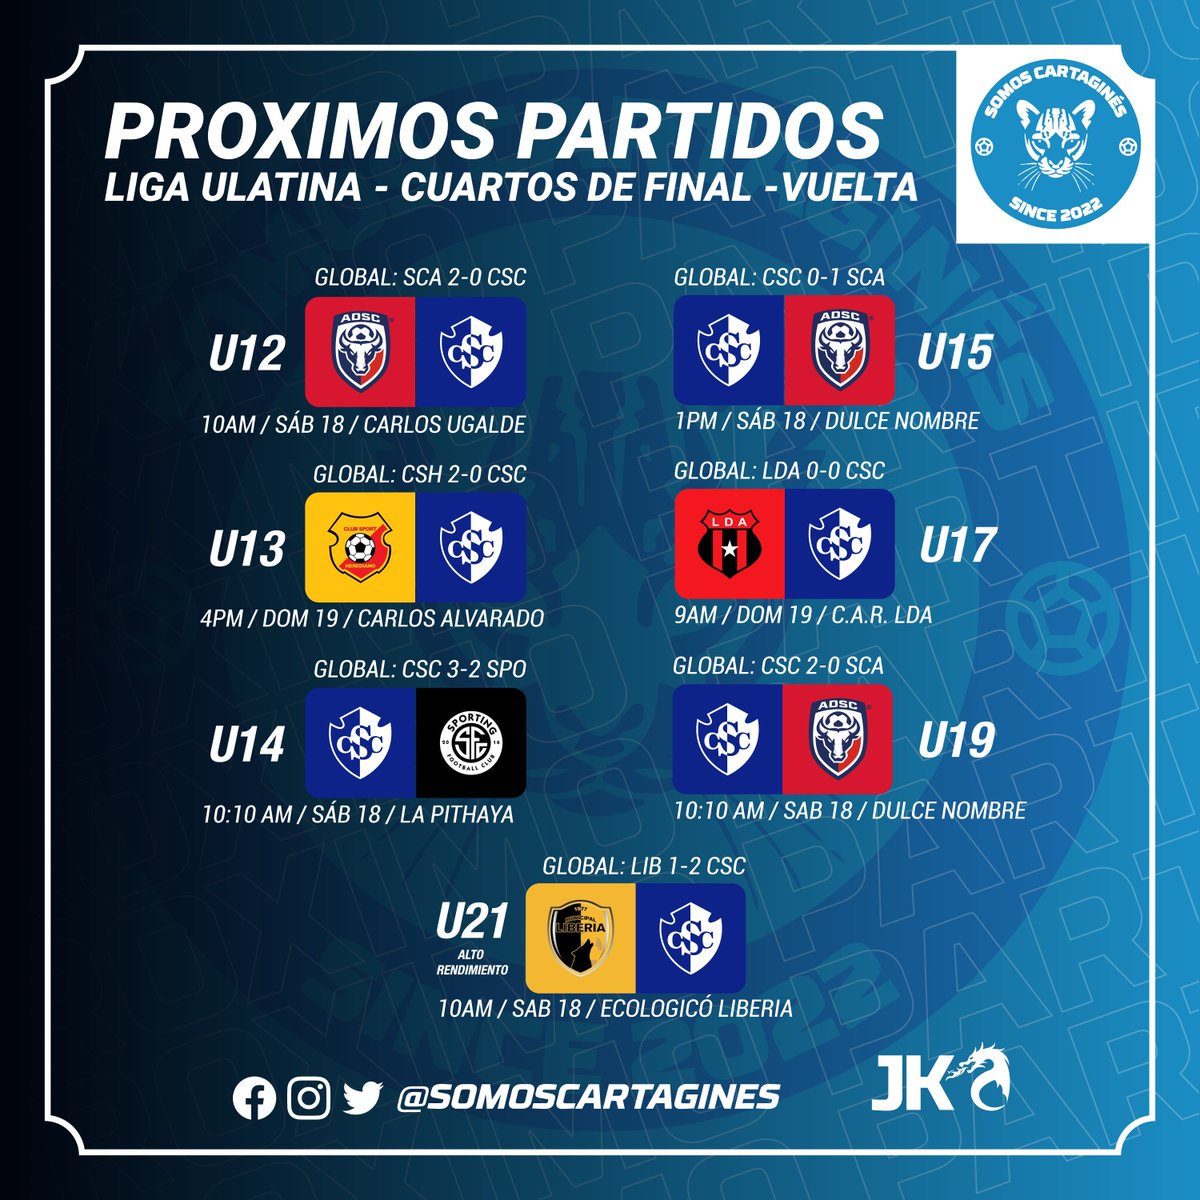 #ProximosPartidos
Estos son los próximos partidos de este fin de semana de la Liga Ulatina en la vuelta de los Cuartos de Final. ¡VAMOS MUCHACHOS! 
#1CSC #VamosCartagines